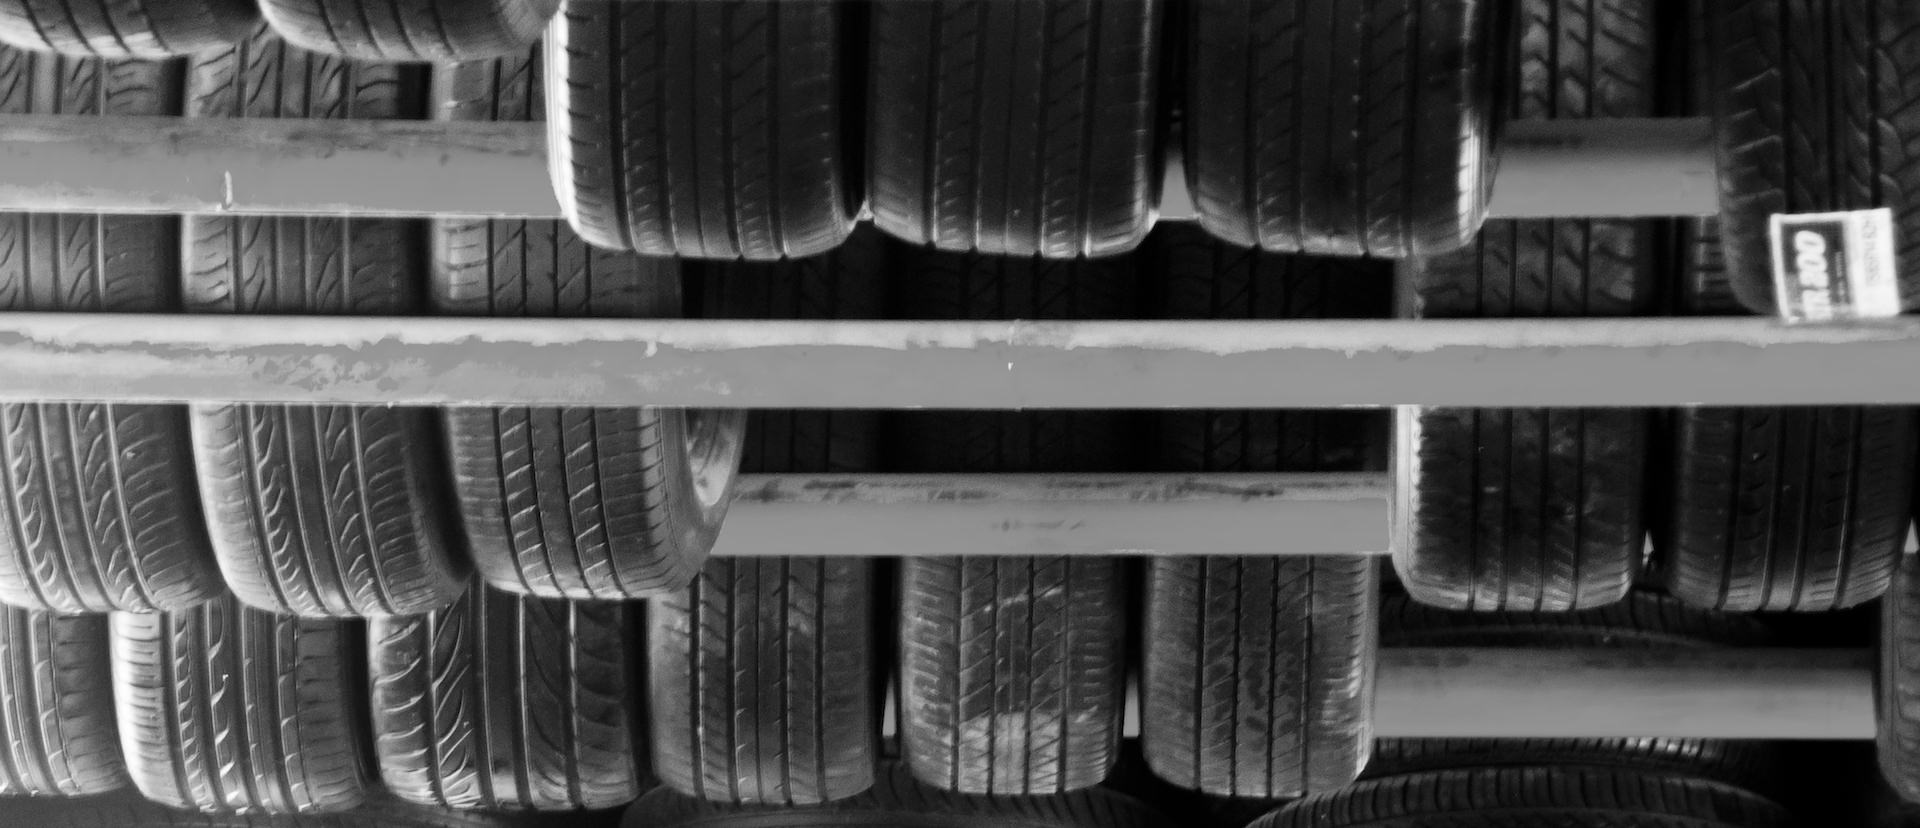 Jak skladovat pneumatiky? Správné uskladnění pneumatik.